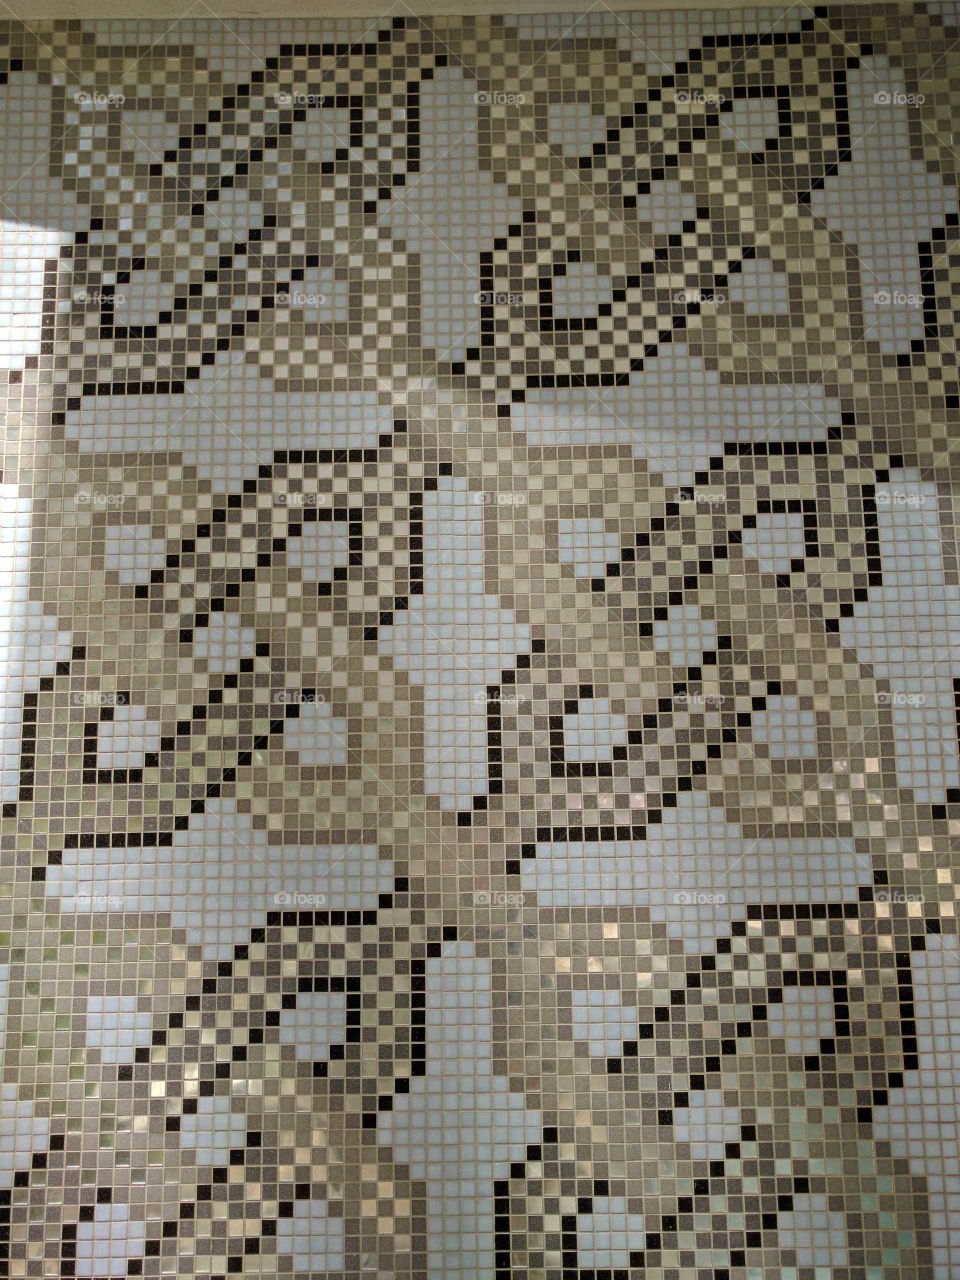 Mosaic Tile Work